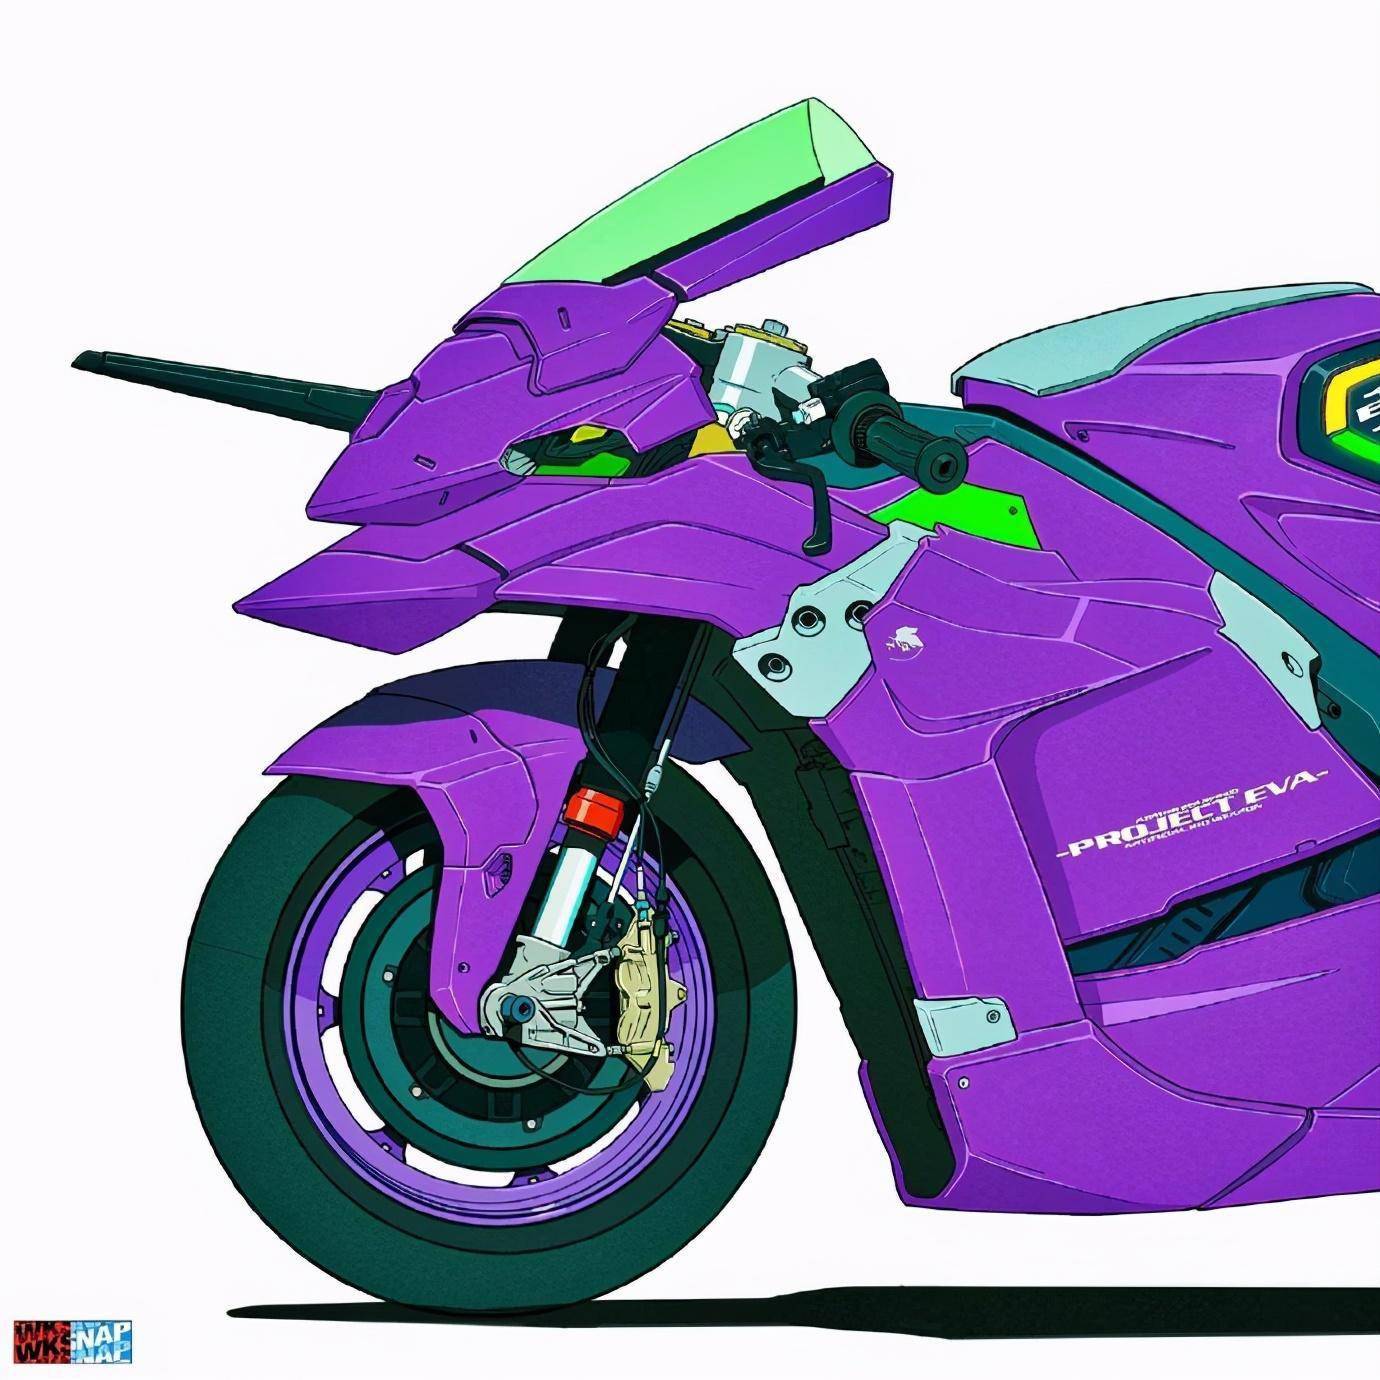 除了以上几款eva配色的方程式赛车外,还有一款初号机配色的摩托车设计